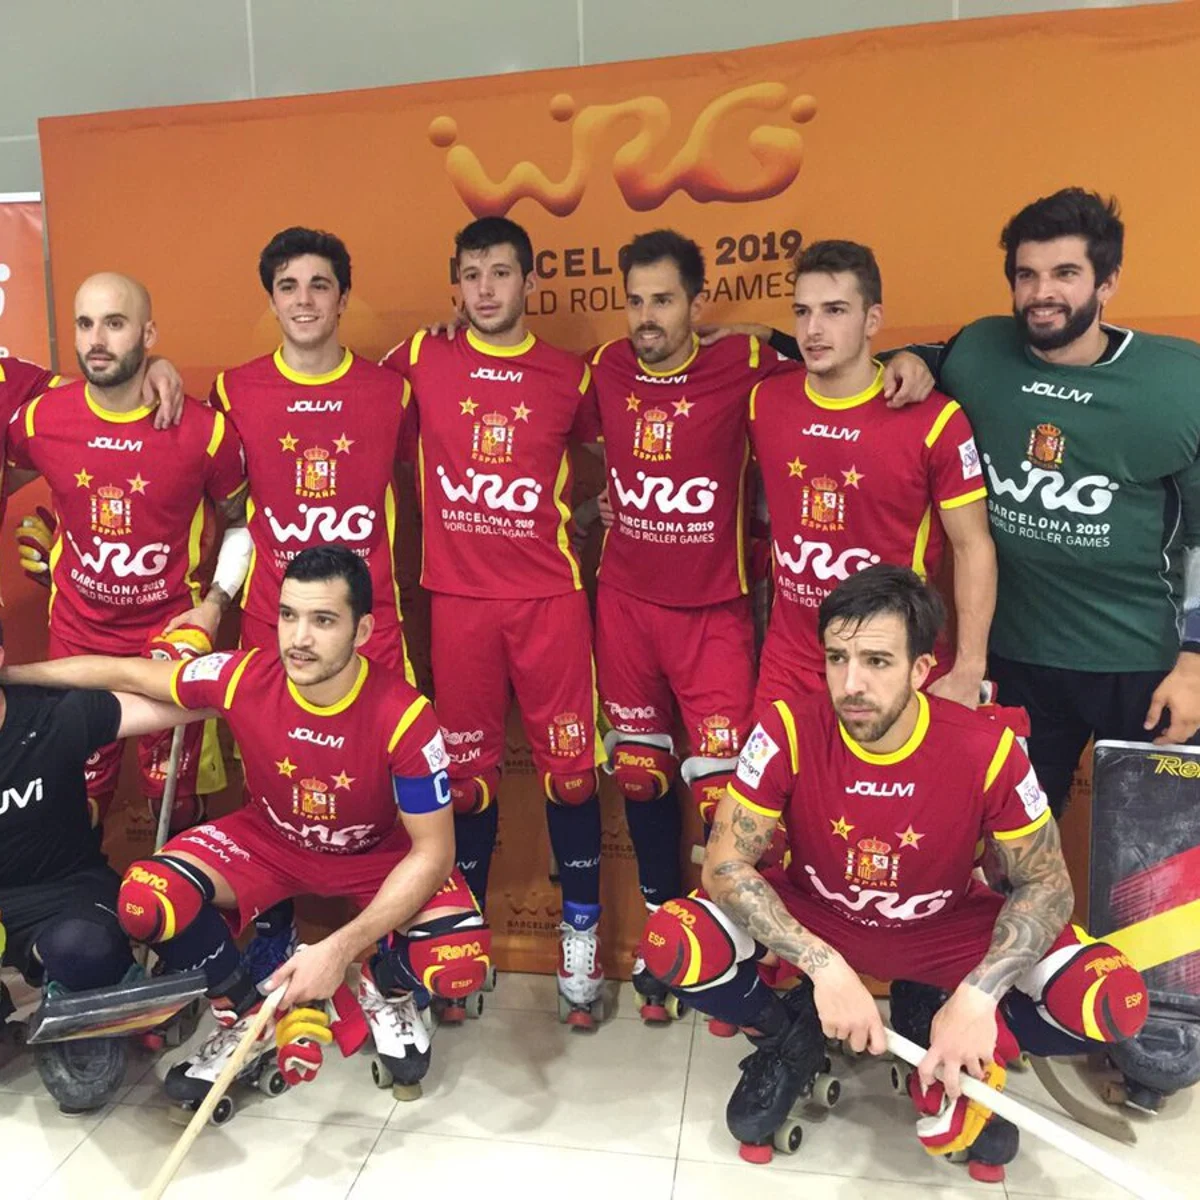 La selección española masculina de hockey gana el en los primeros Juegos Mundiales | Onda Radio